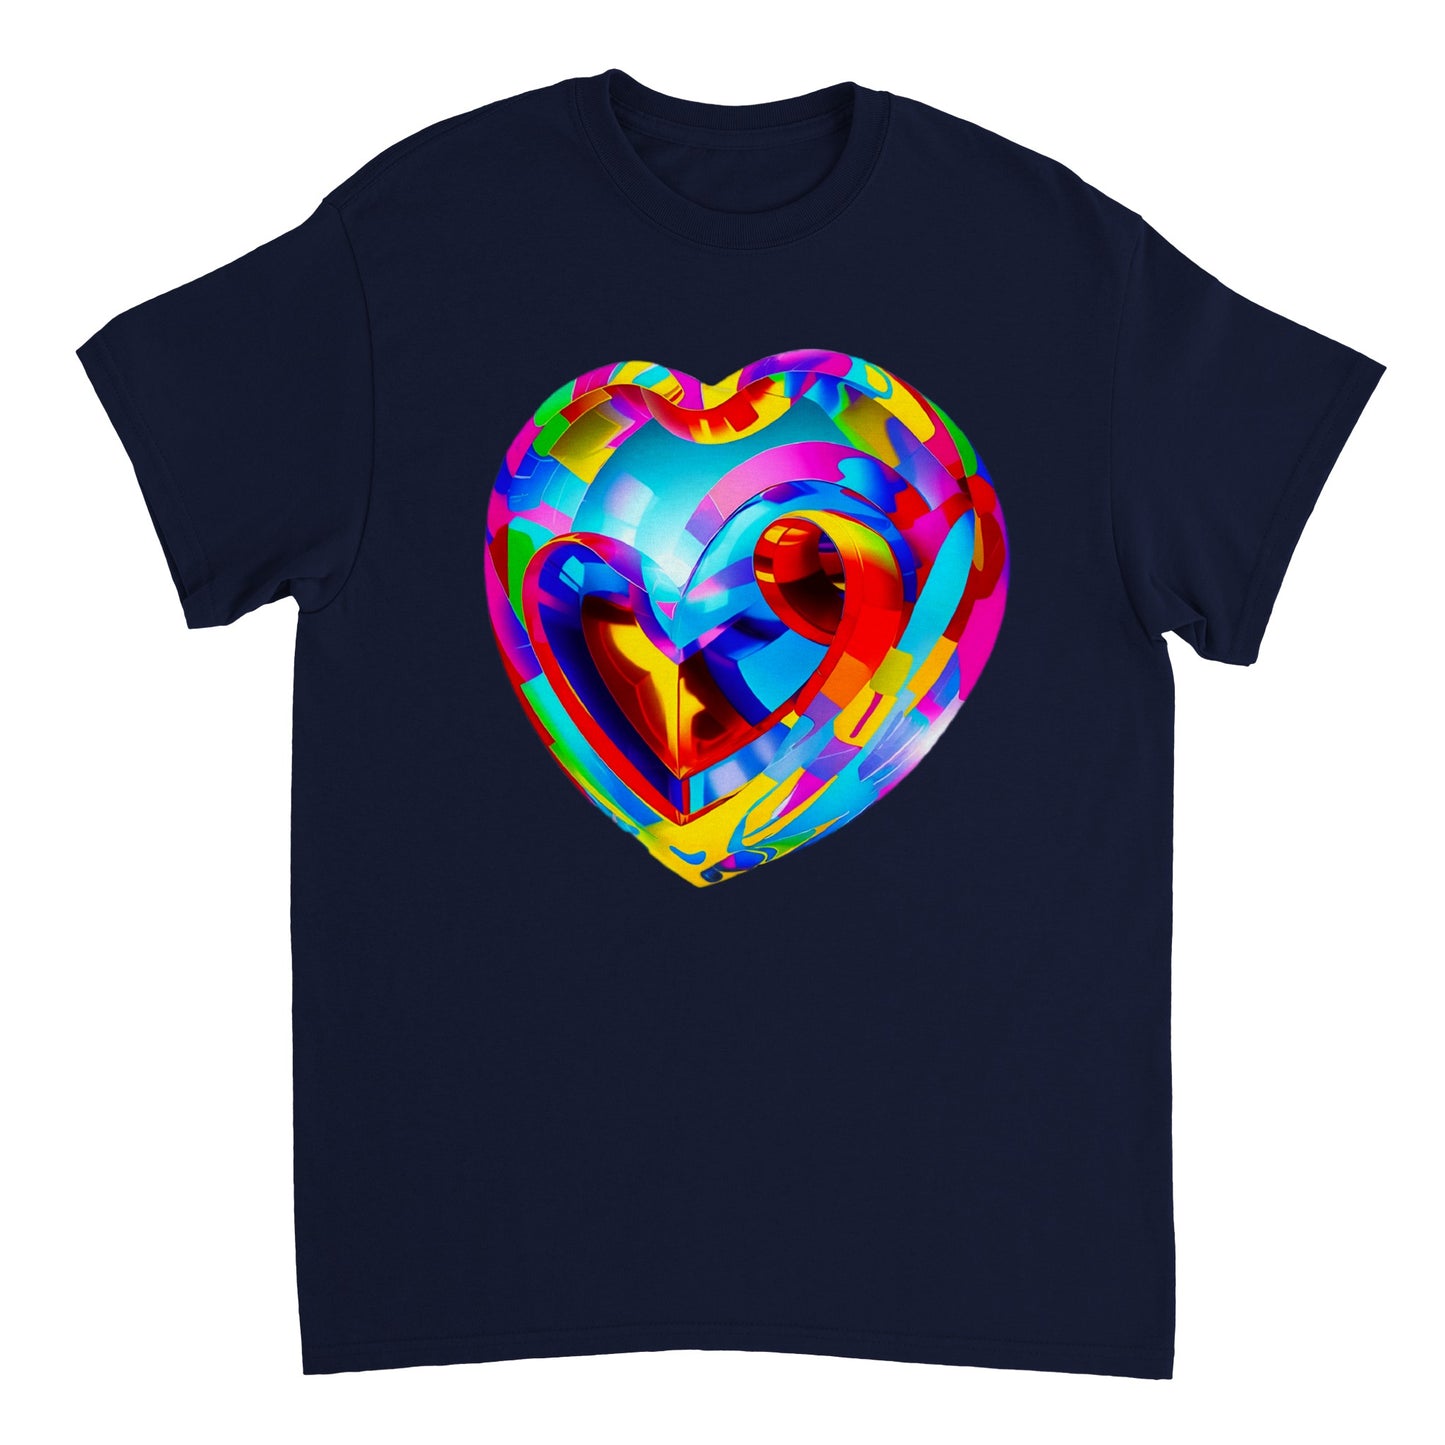 Love Heart - Heavyweight Unisex Crewneck T-shirt 94